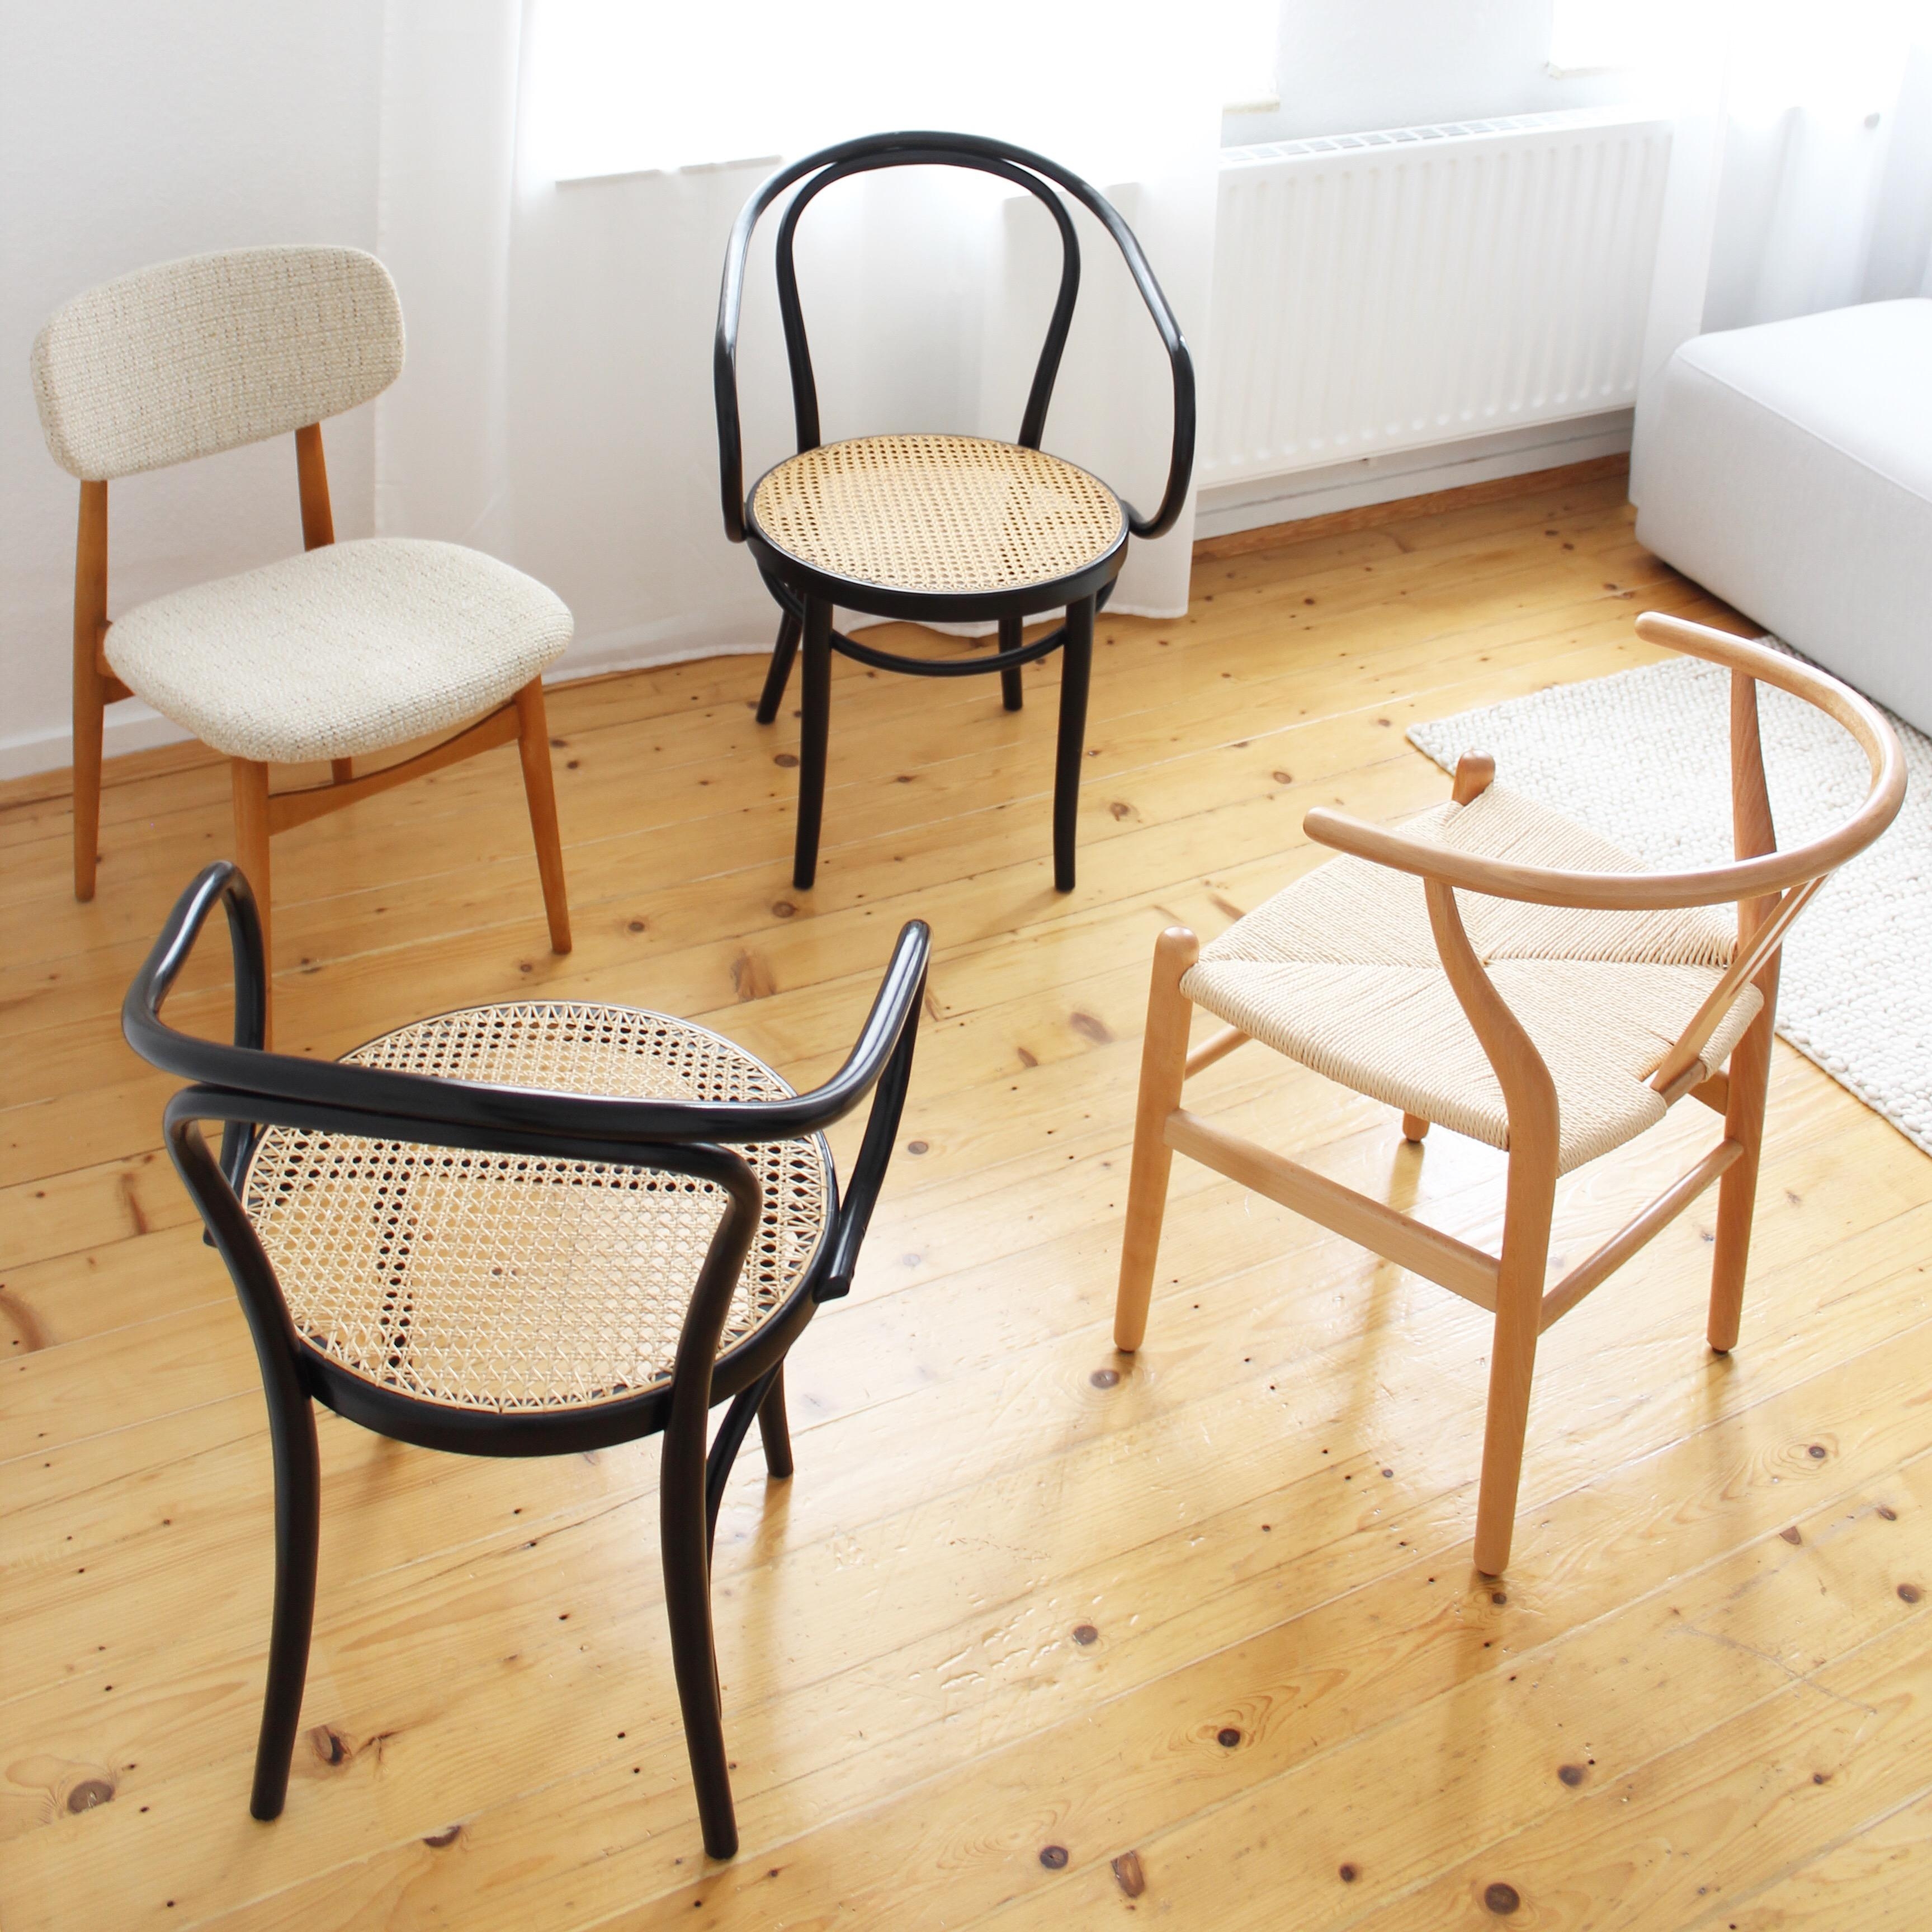 Die Stuhlfamilie ist komplett! #stuhlliebe #thonet #nordichome #interiordesign #interiorforinspo #interiorliebe 